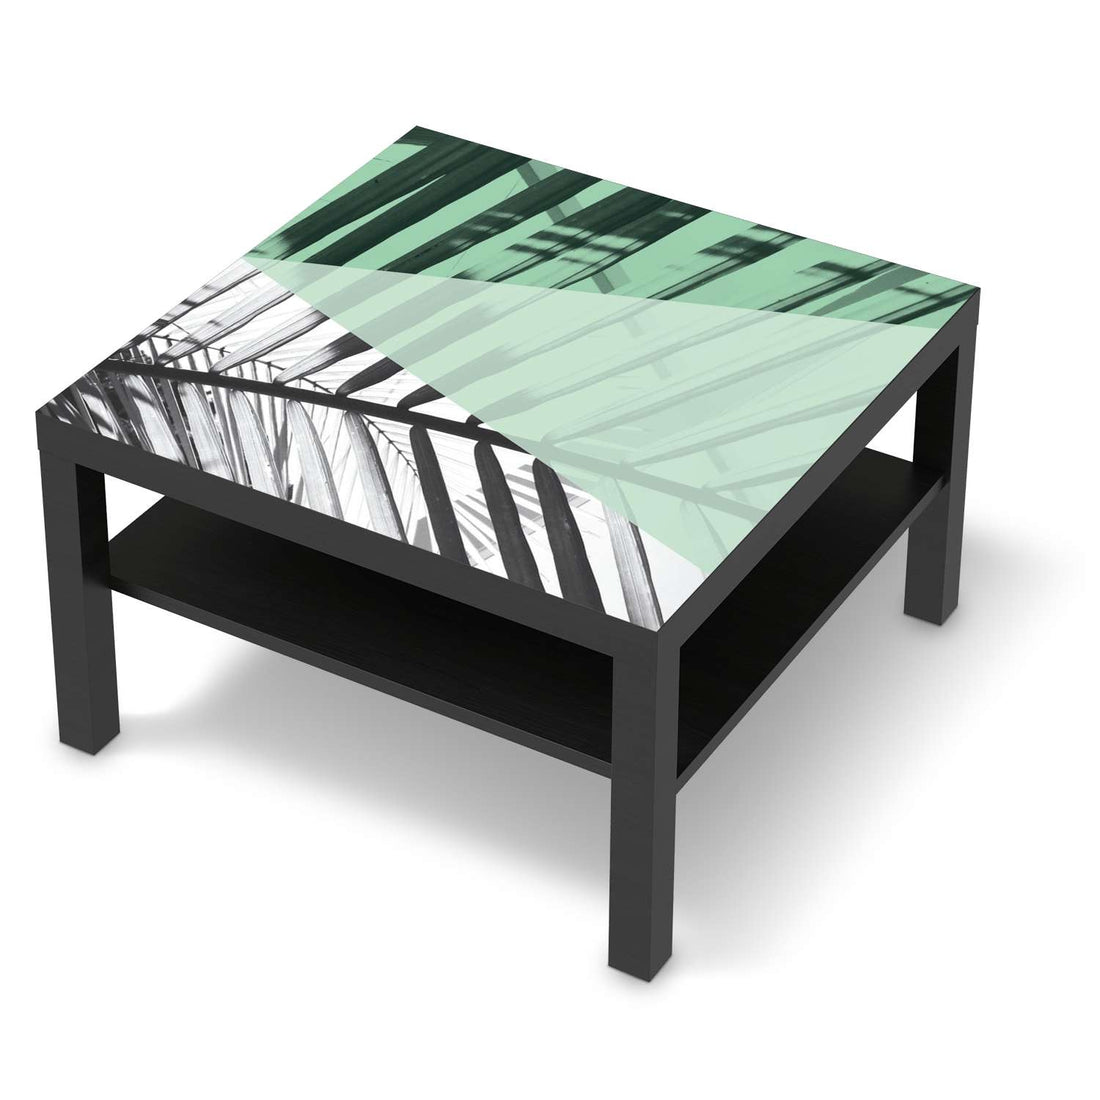 Selbstklebende Folie Palmen mint - IKEA Lack Tisch 78x78 cm - schwarz